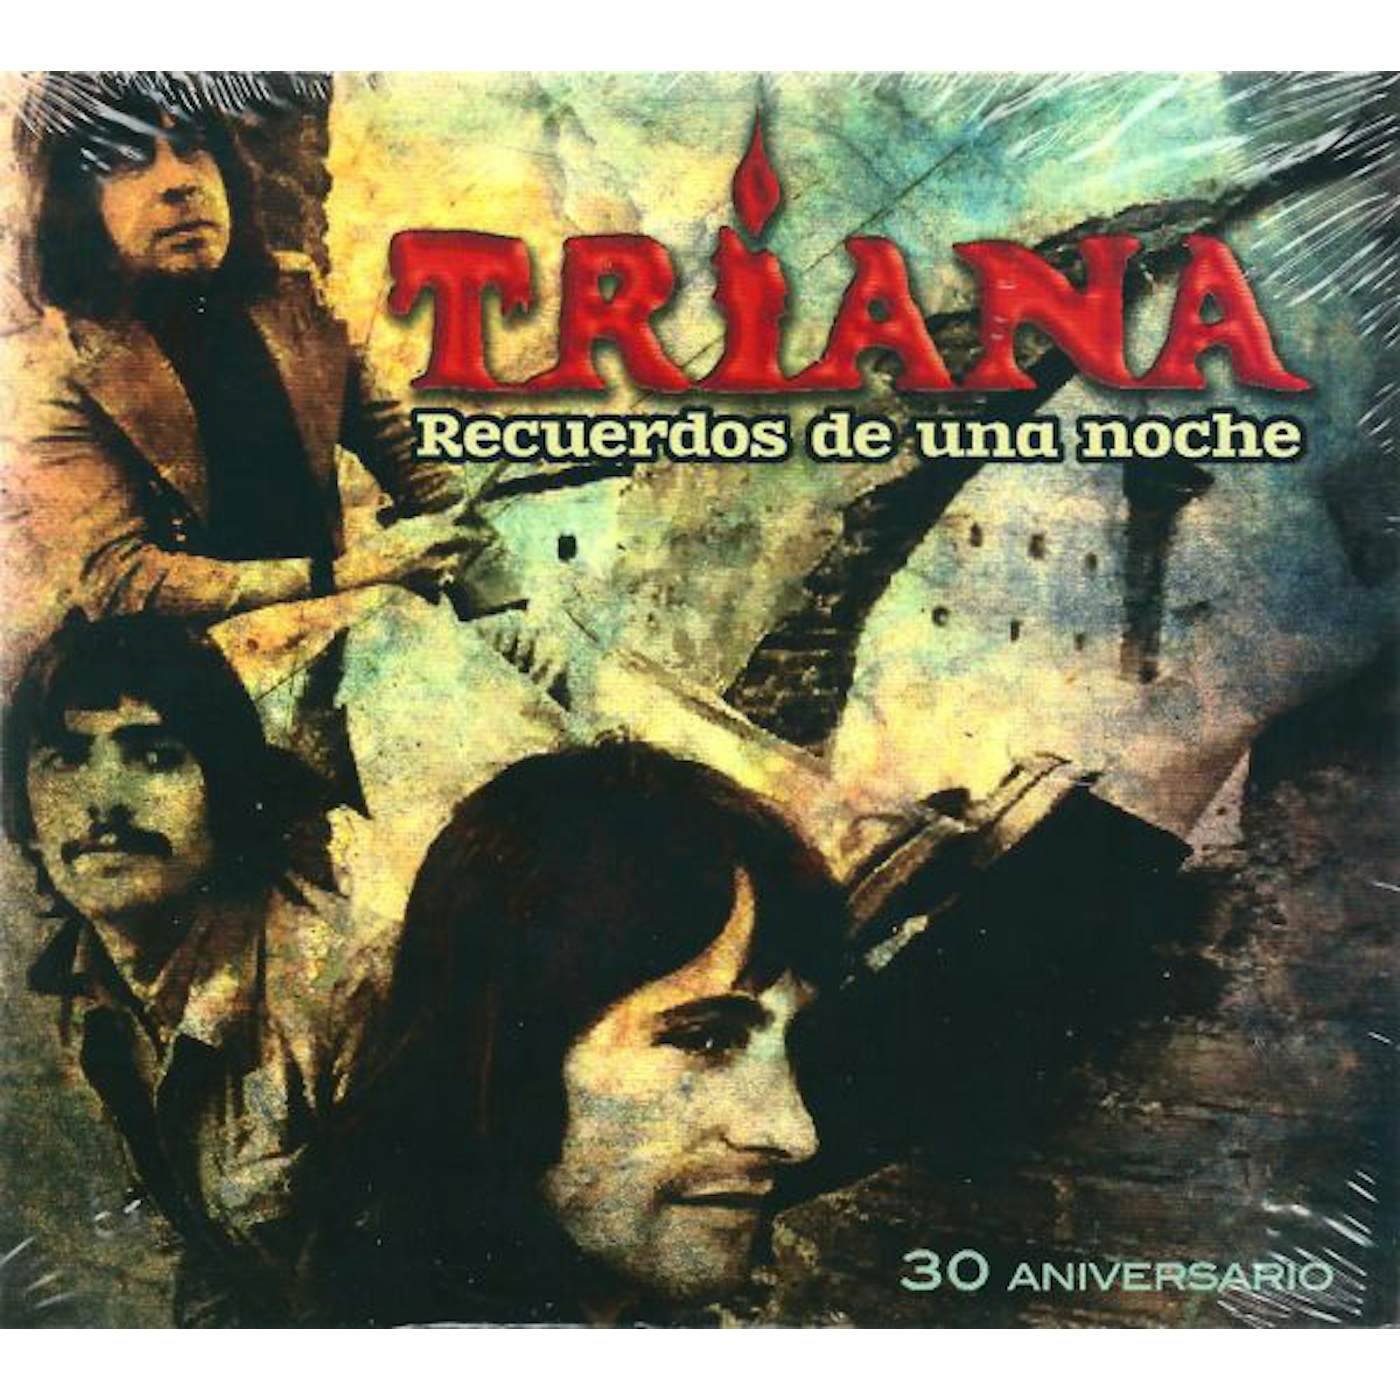 Triana RECUERDOS DE UNA NOCHE 30 ANIVERSARIO CD - Spain Release